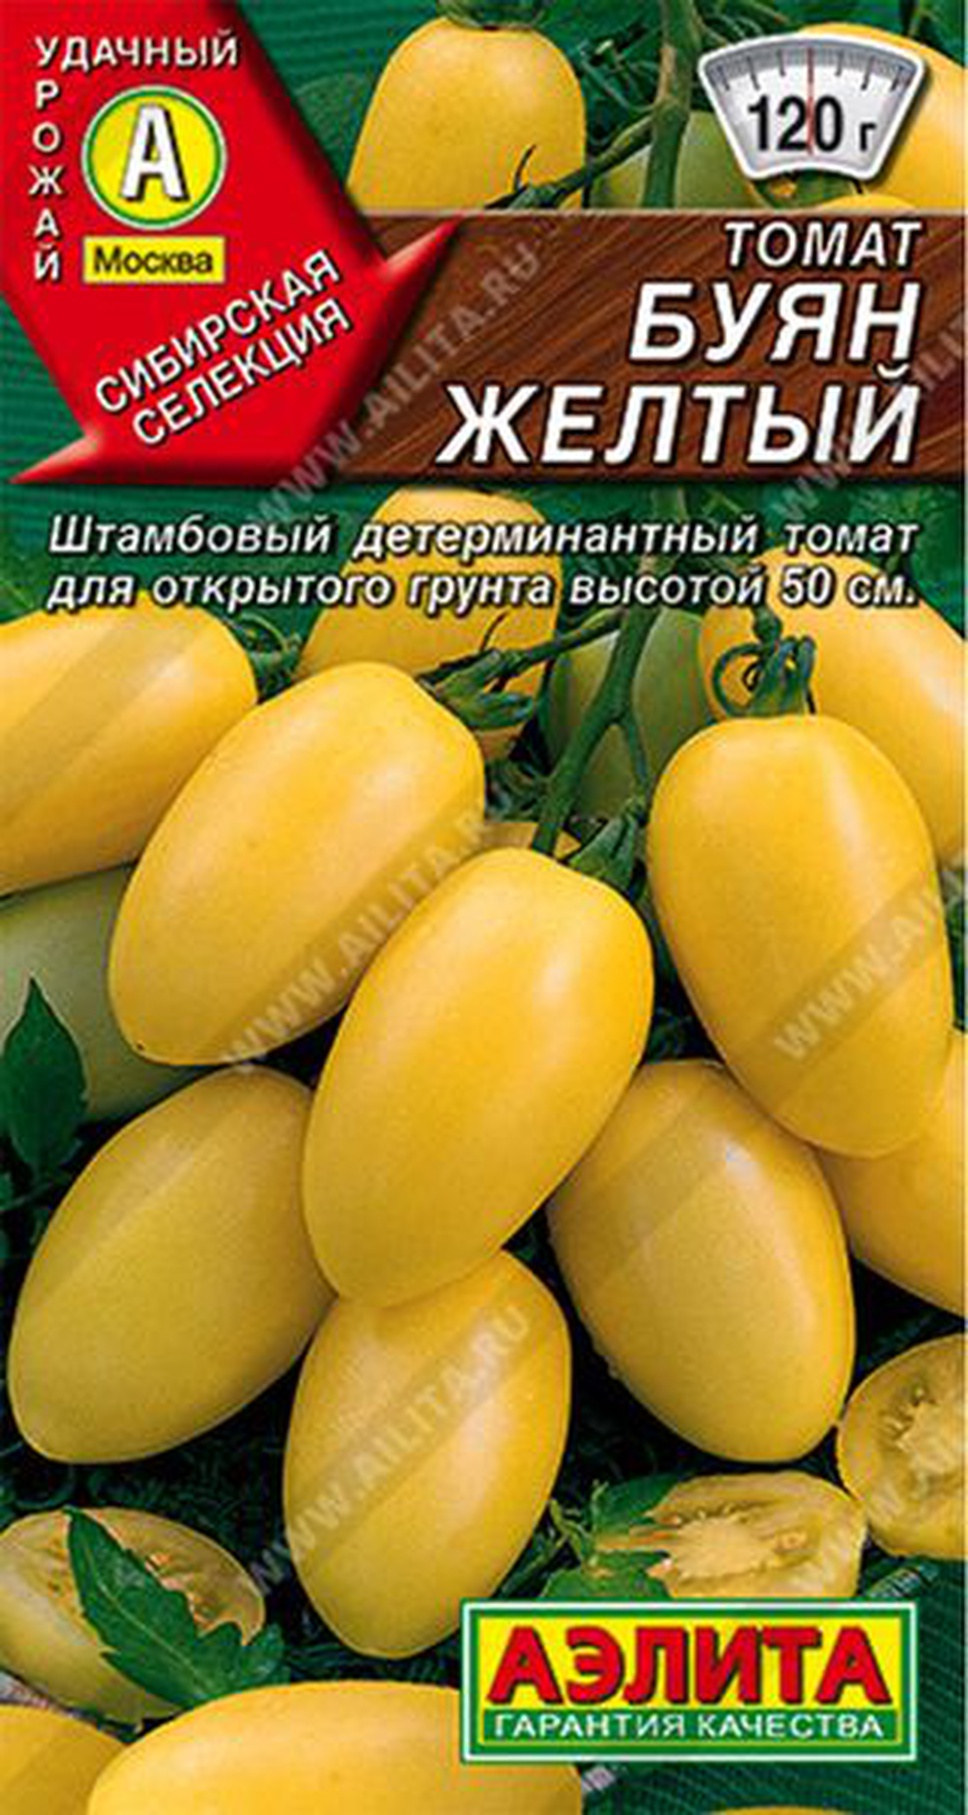 Семена томат Буян желтый